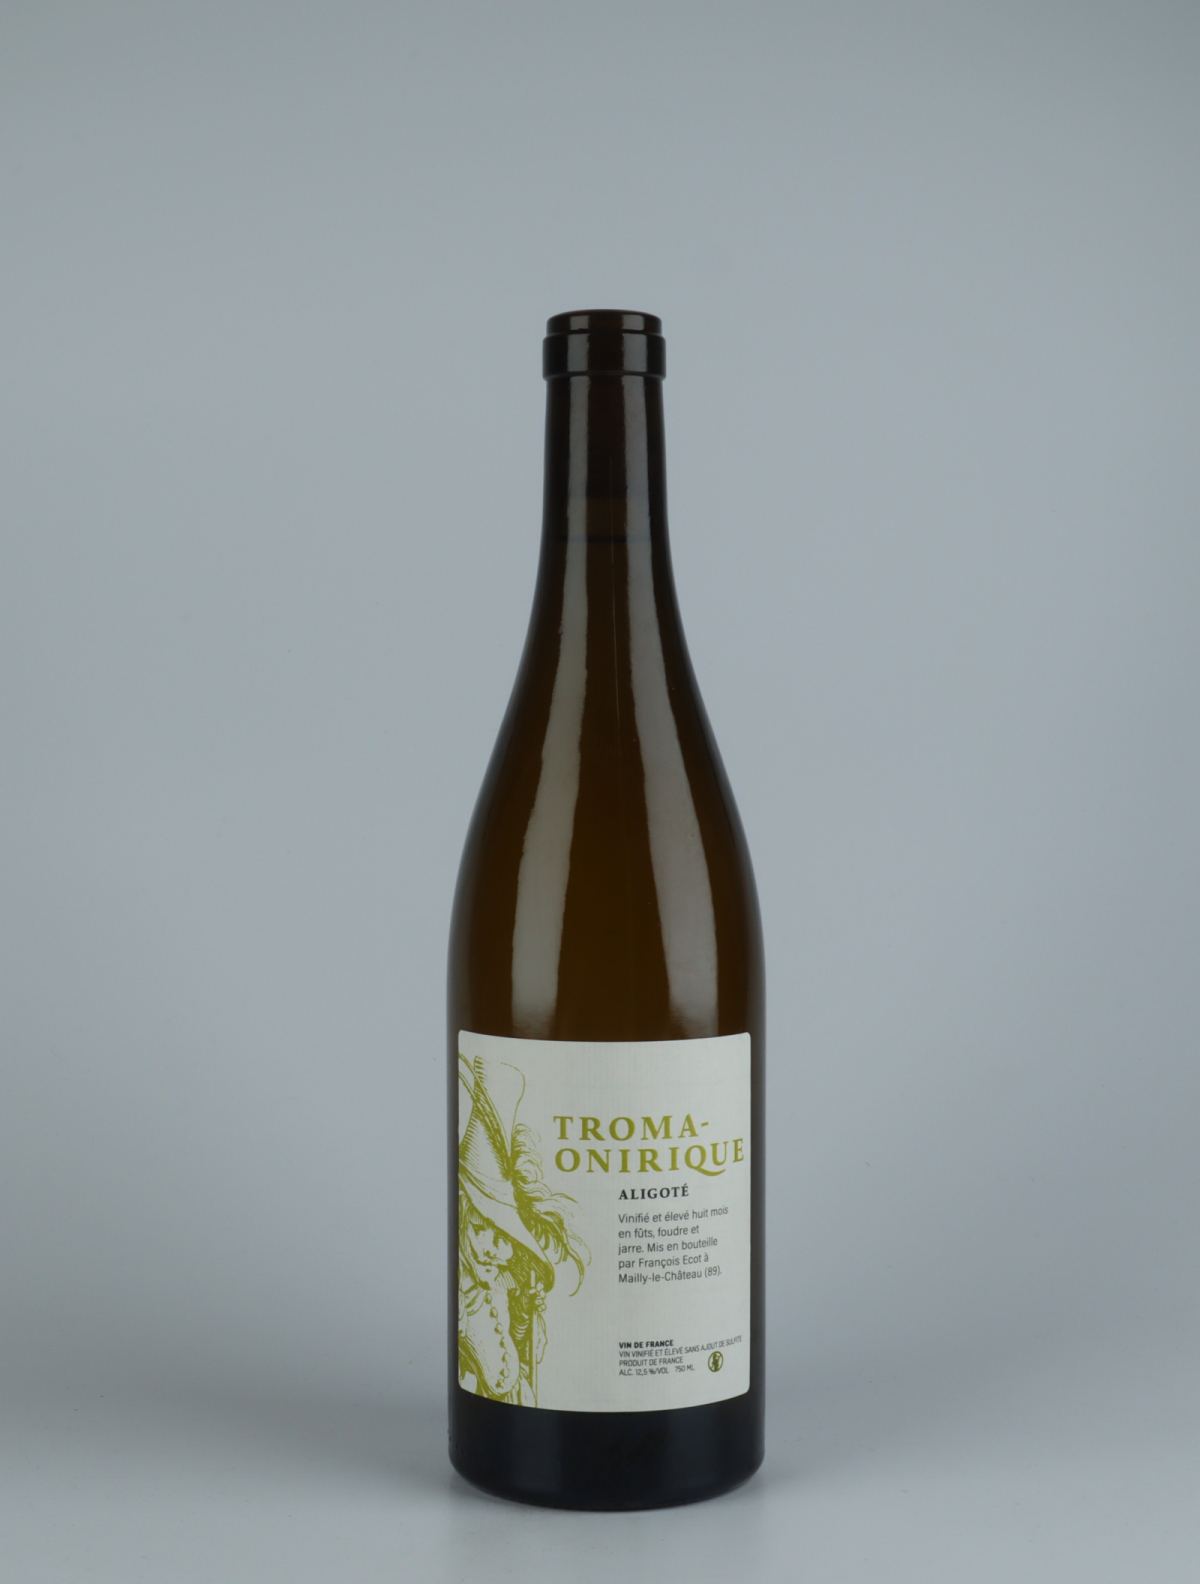 En flaske 2020 Troma-Onirique Hvidvin fra François Ecot, Bourgogne i Frankrig